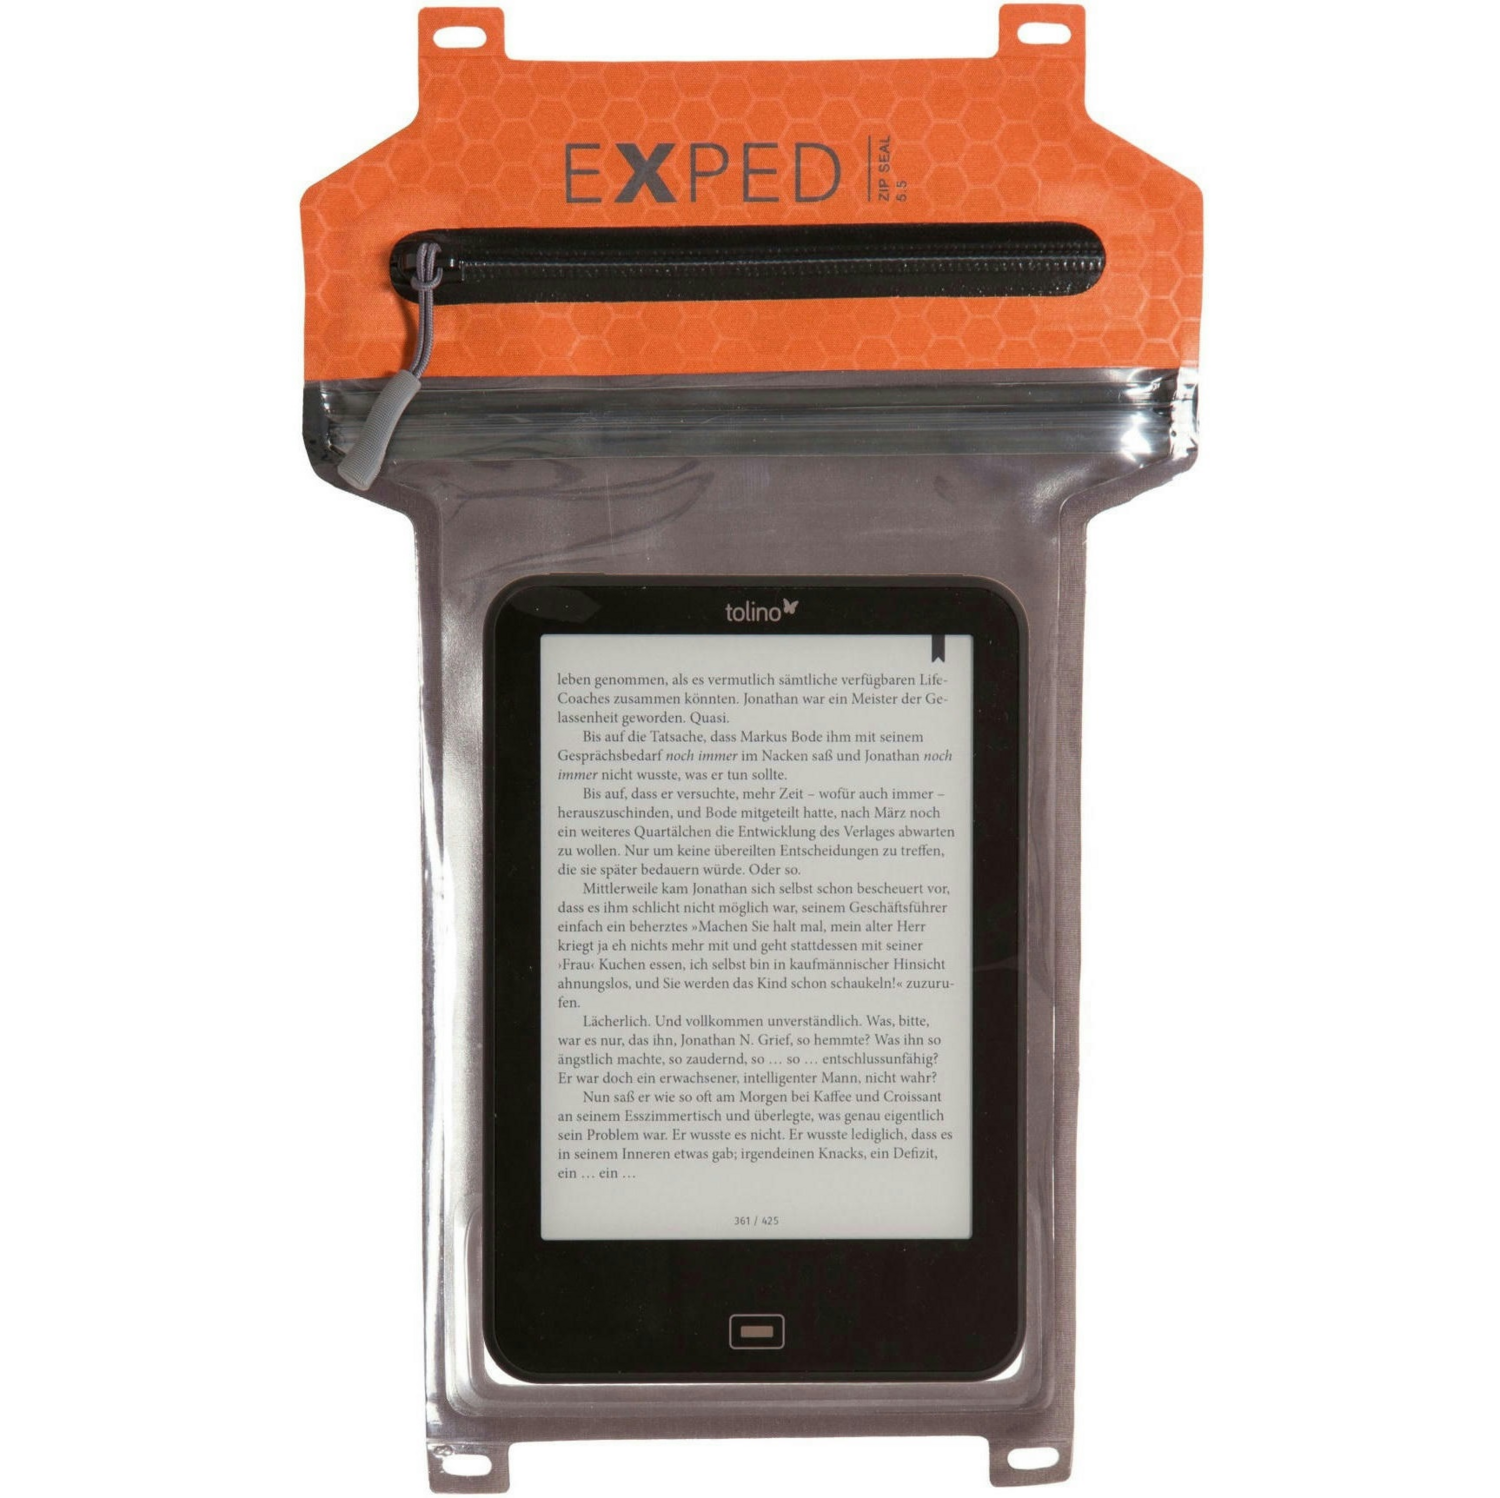 Чехол водозащитный Exped Zxped ZipSeal 5,5 terracotta оранжевый фото 